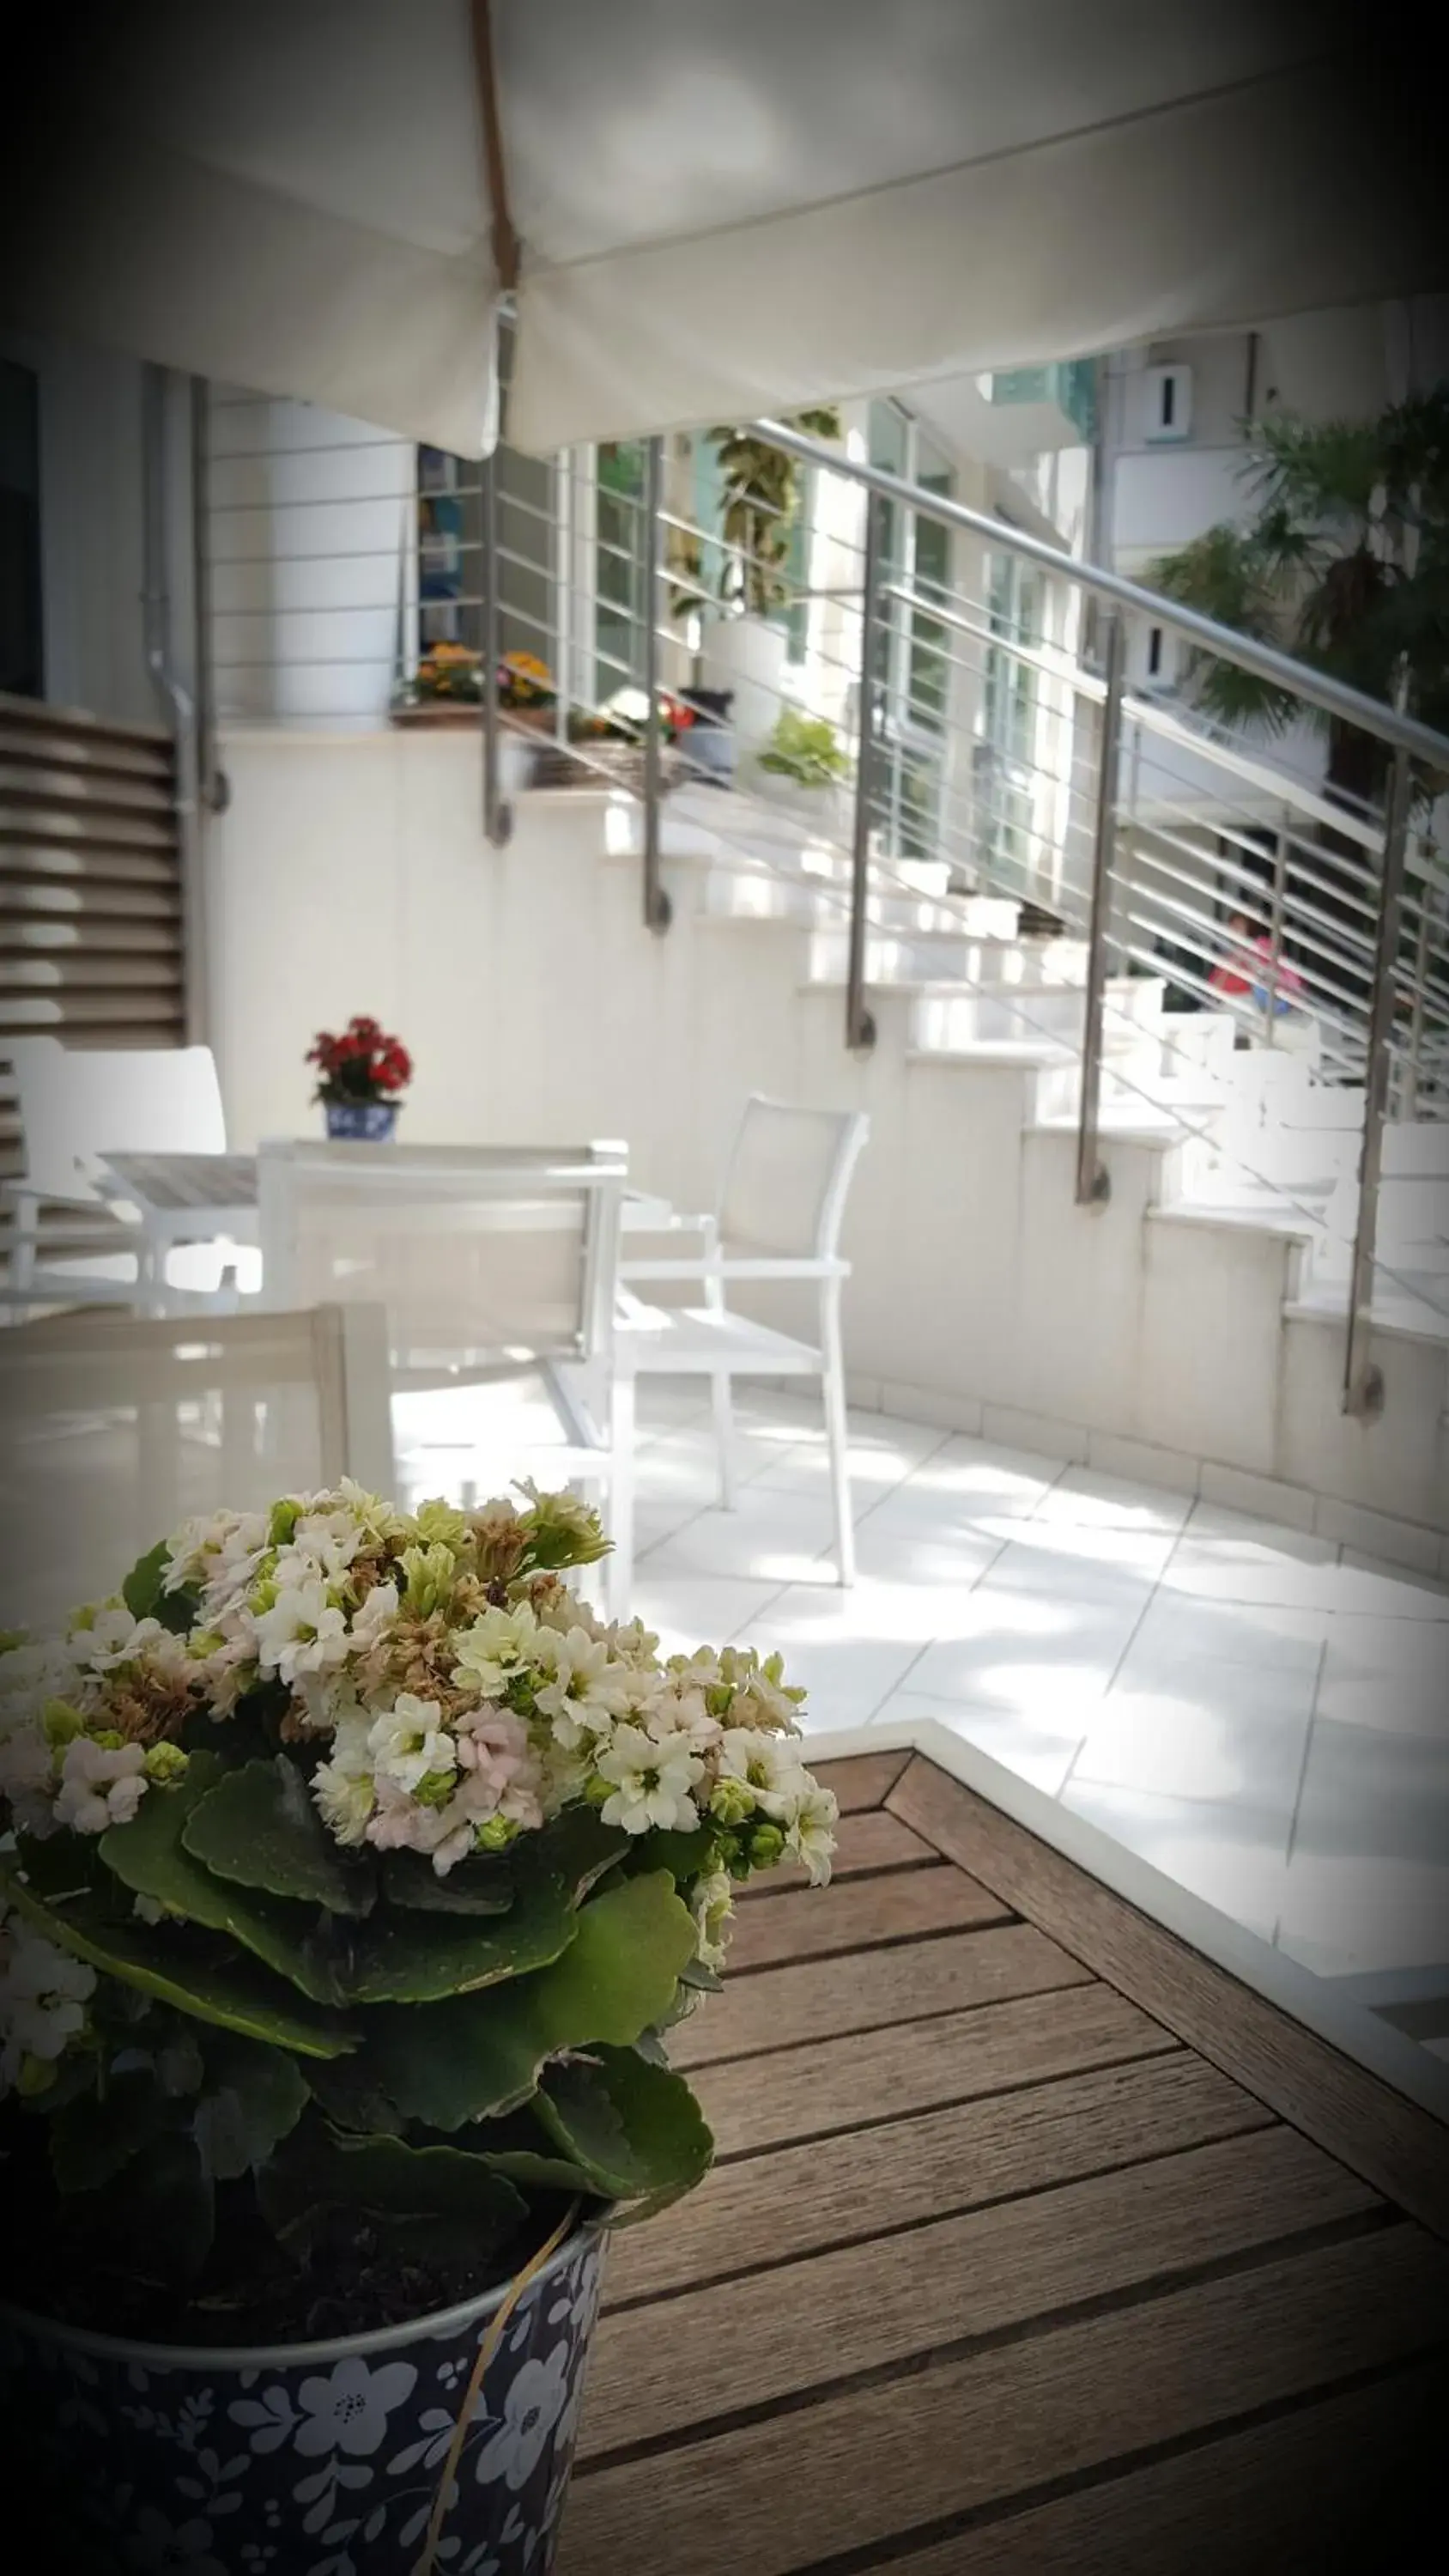 Balcony/Terrace, Patio/Outdoor Area in Hotel Calypso